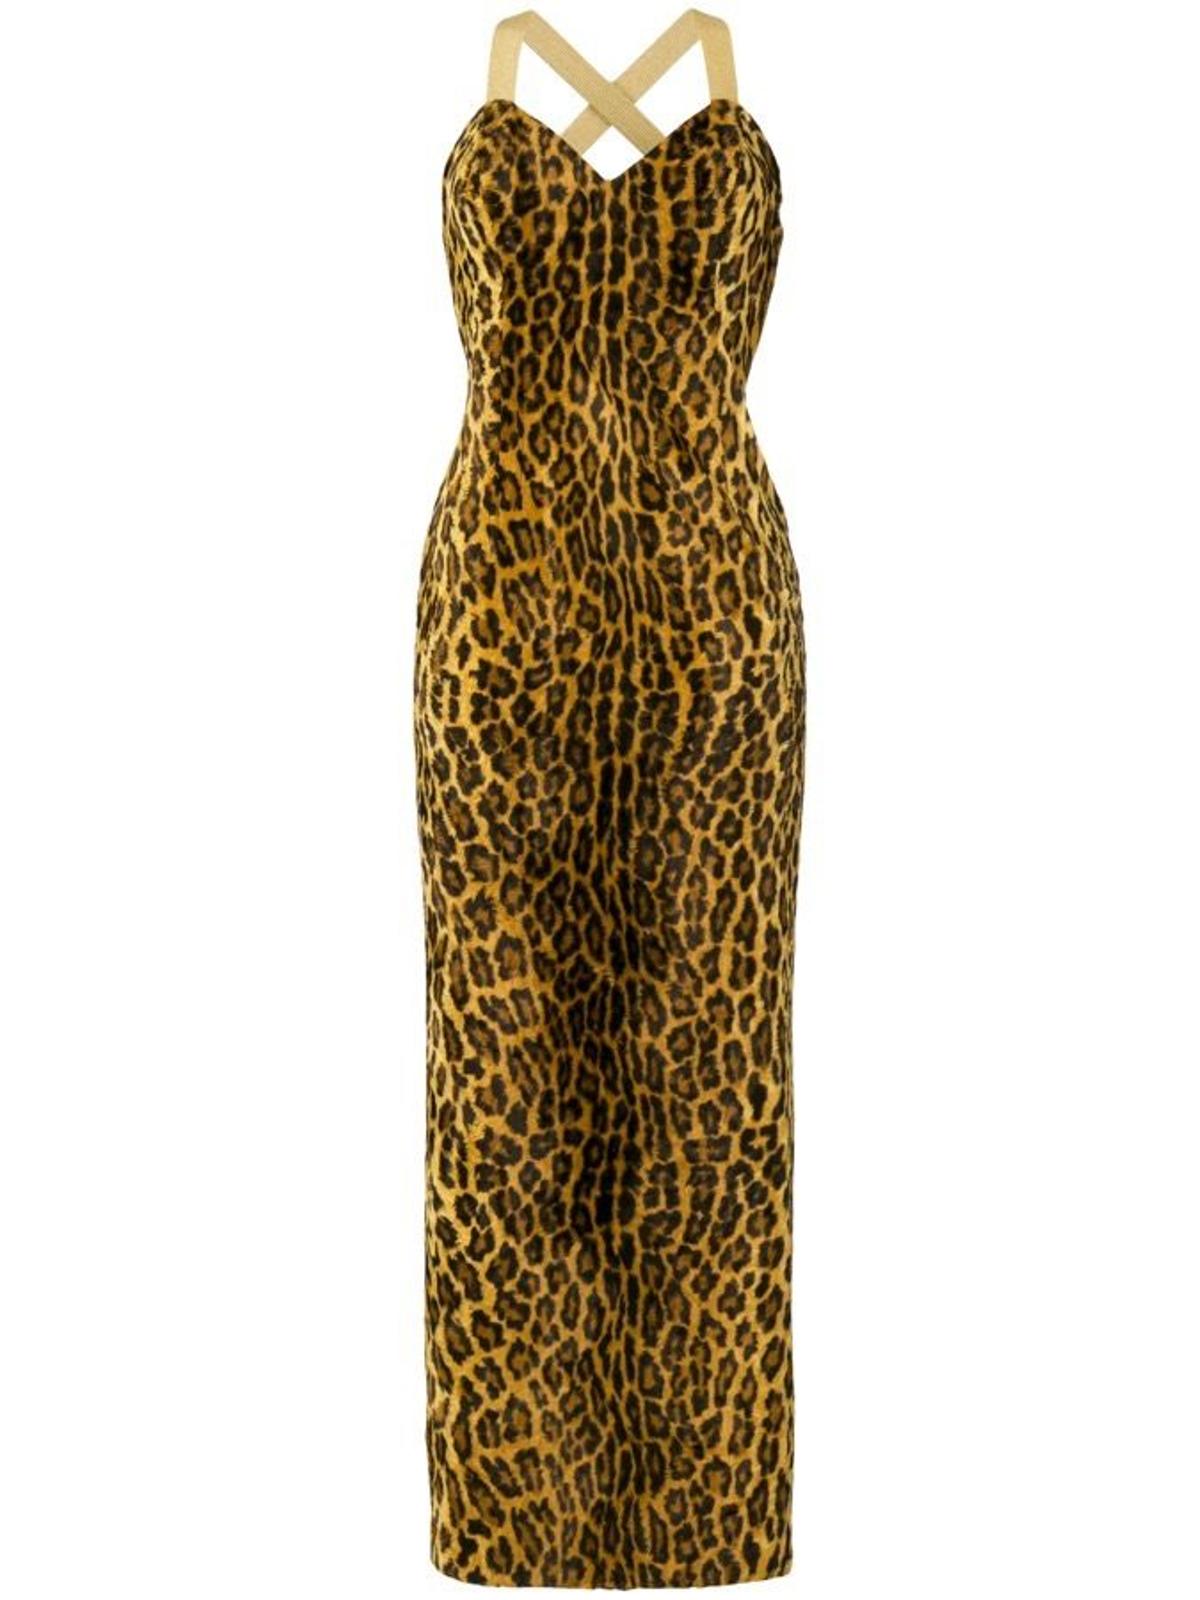 William Vintage Gianni Versace para Farfetch, vestido de leopardo